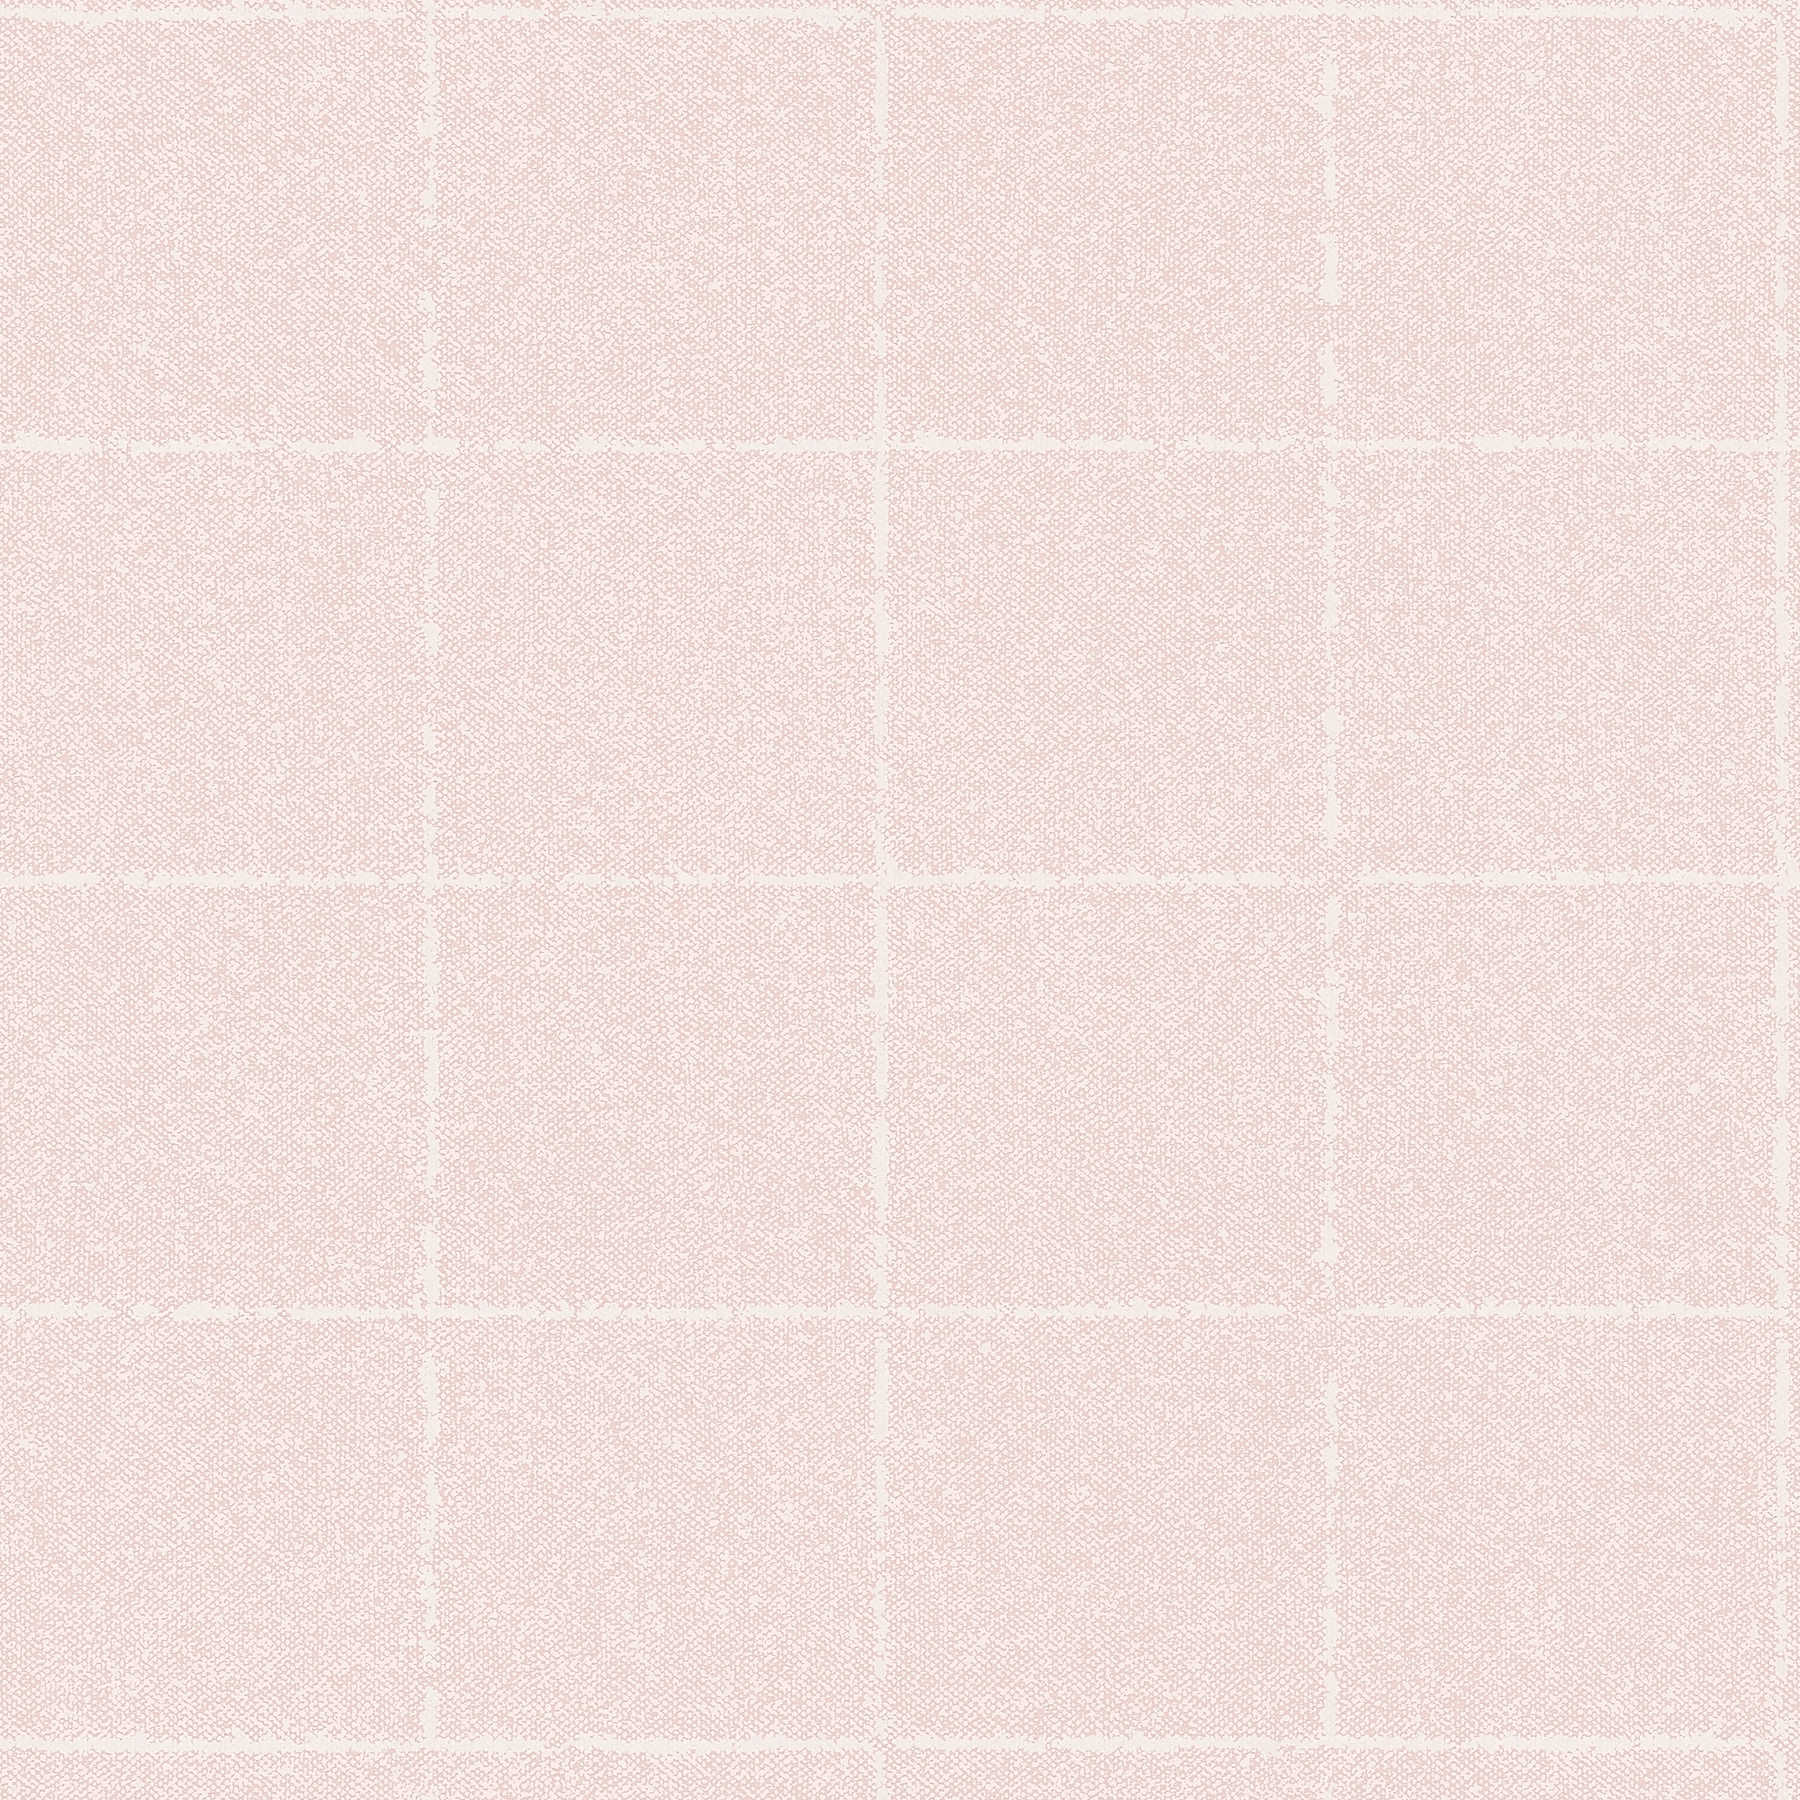 Papel pintado a cuadros en óptica textil, con textura - rosa, blanco, crema
